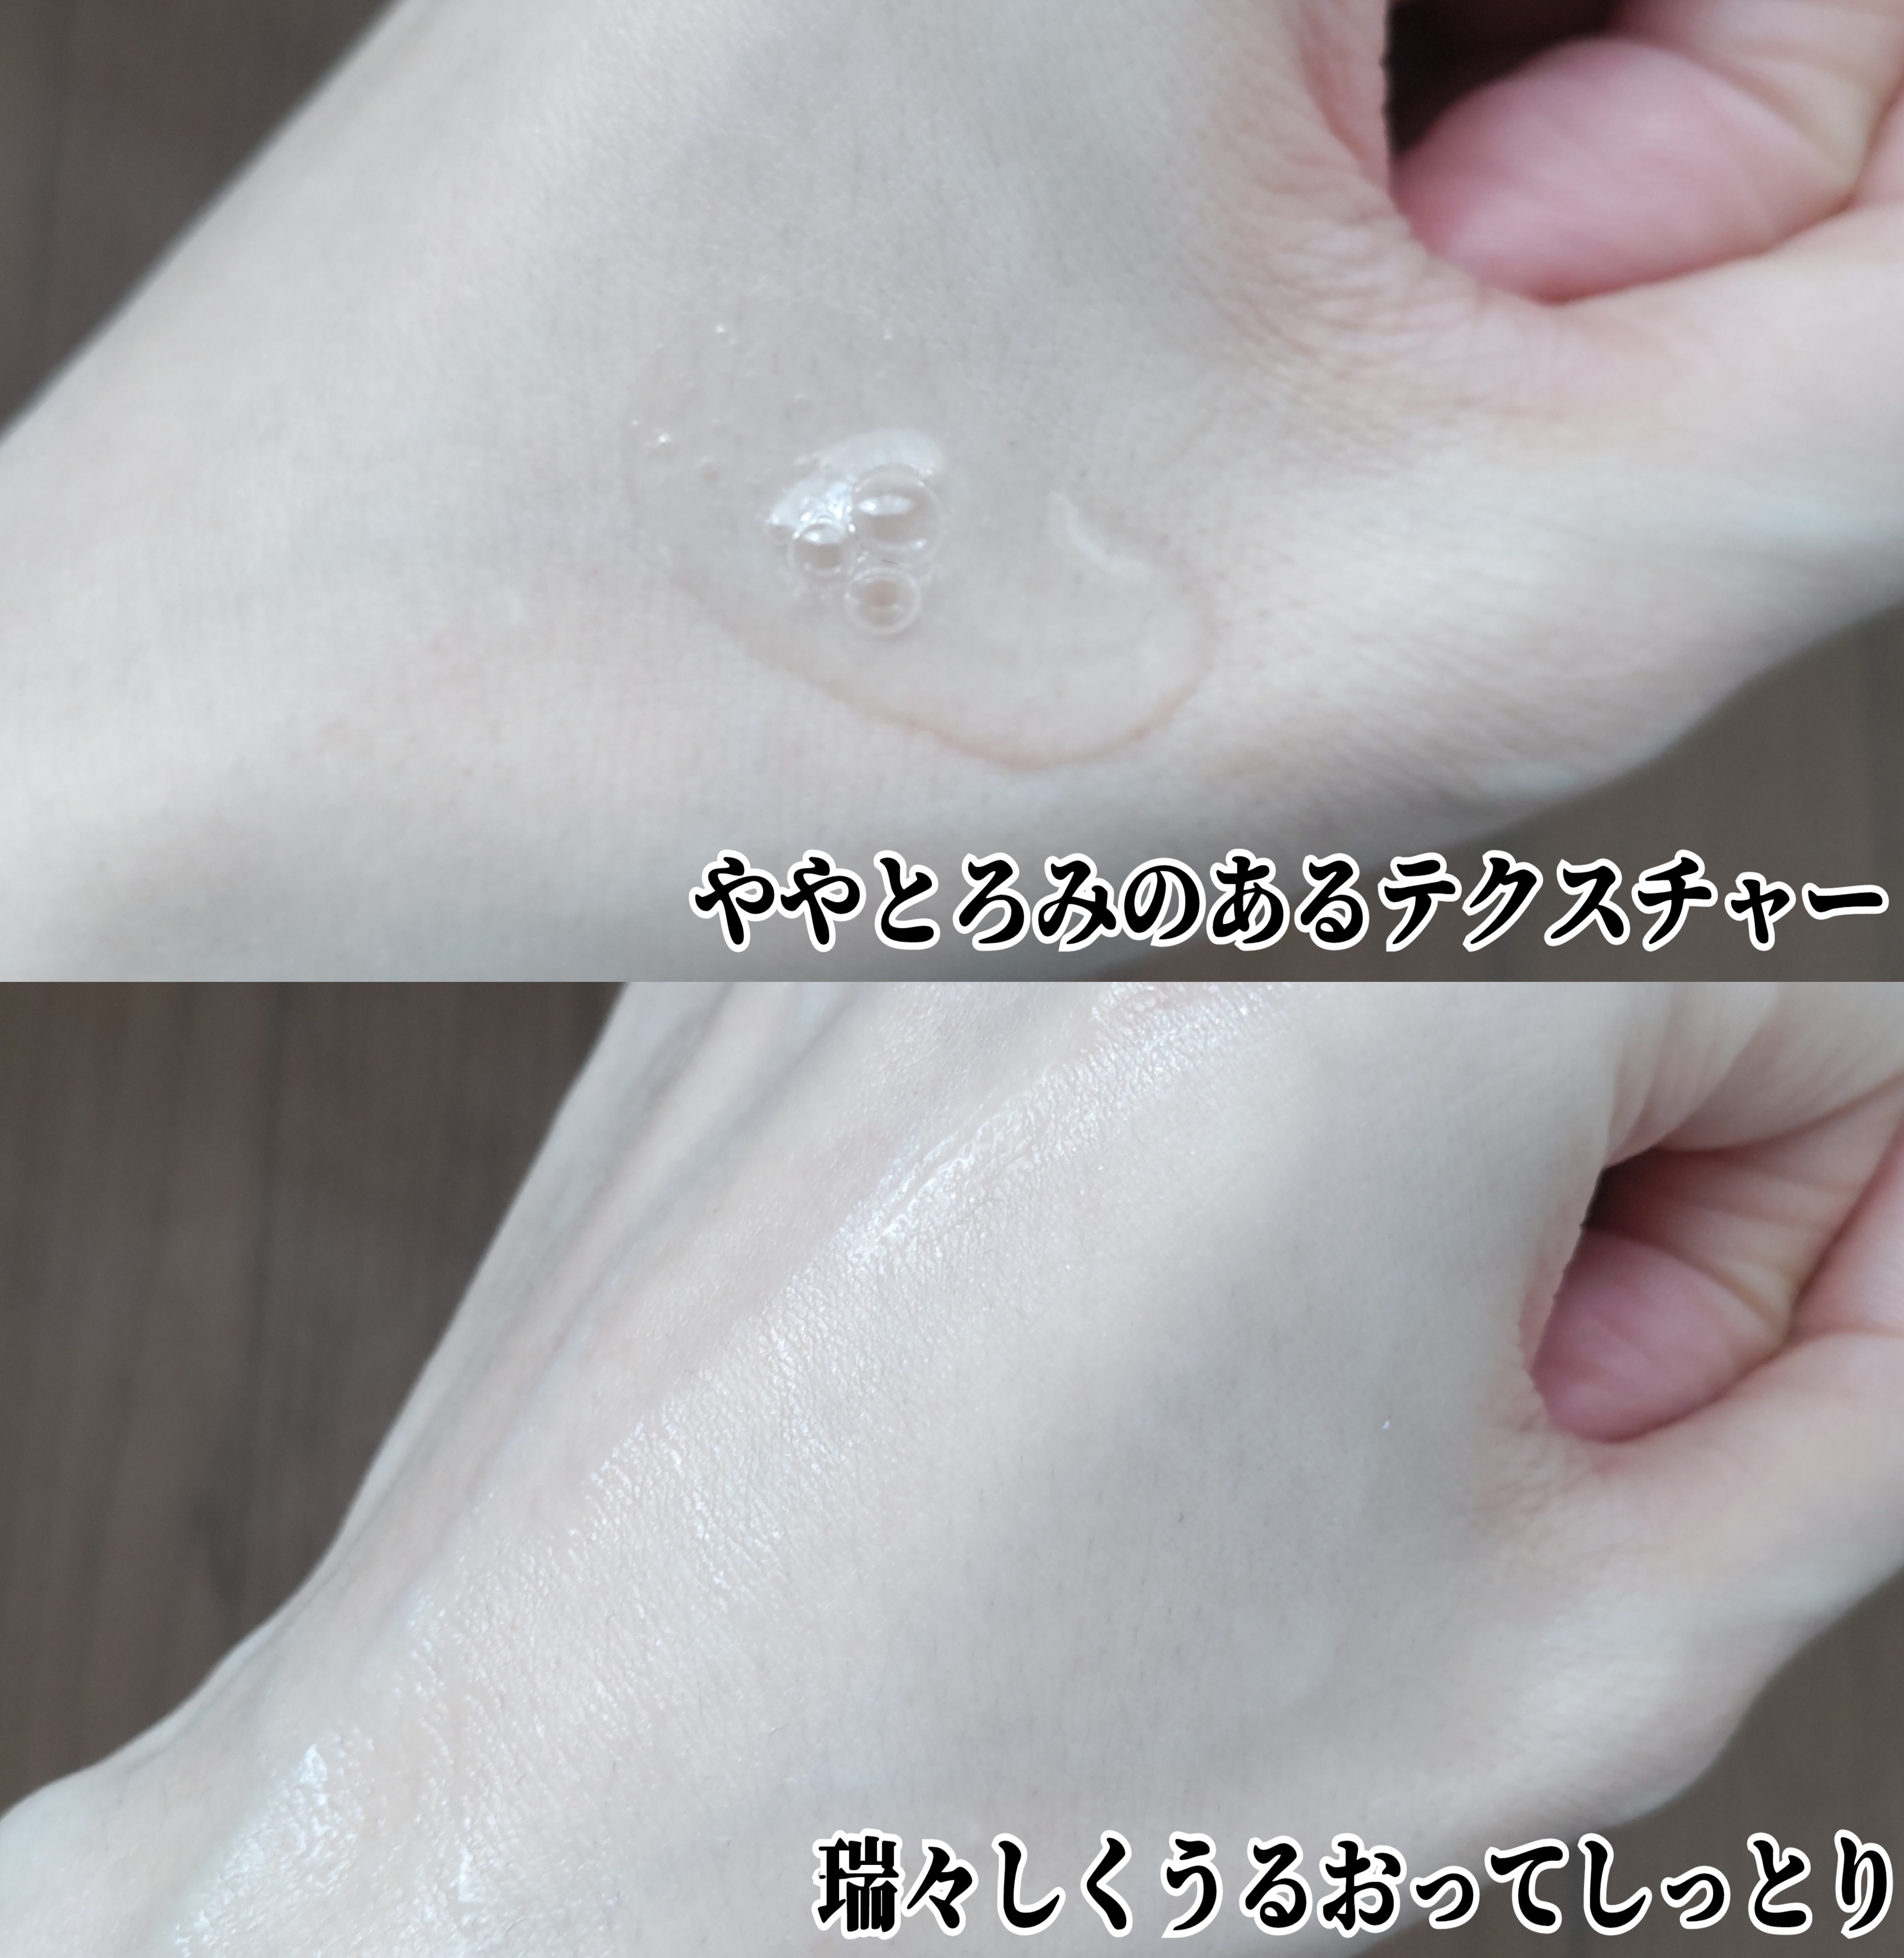 ネイチャーリパブリック ヒアテノール トナー(化粧水)を使ったYuKaRi♡さんのクチコミ画像3